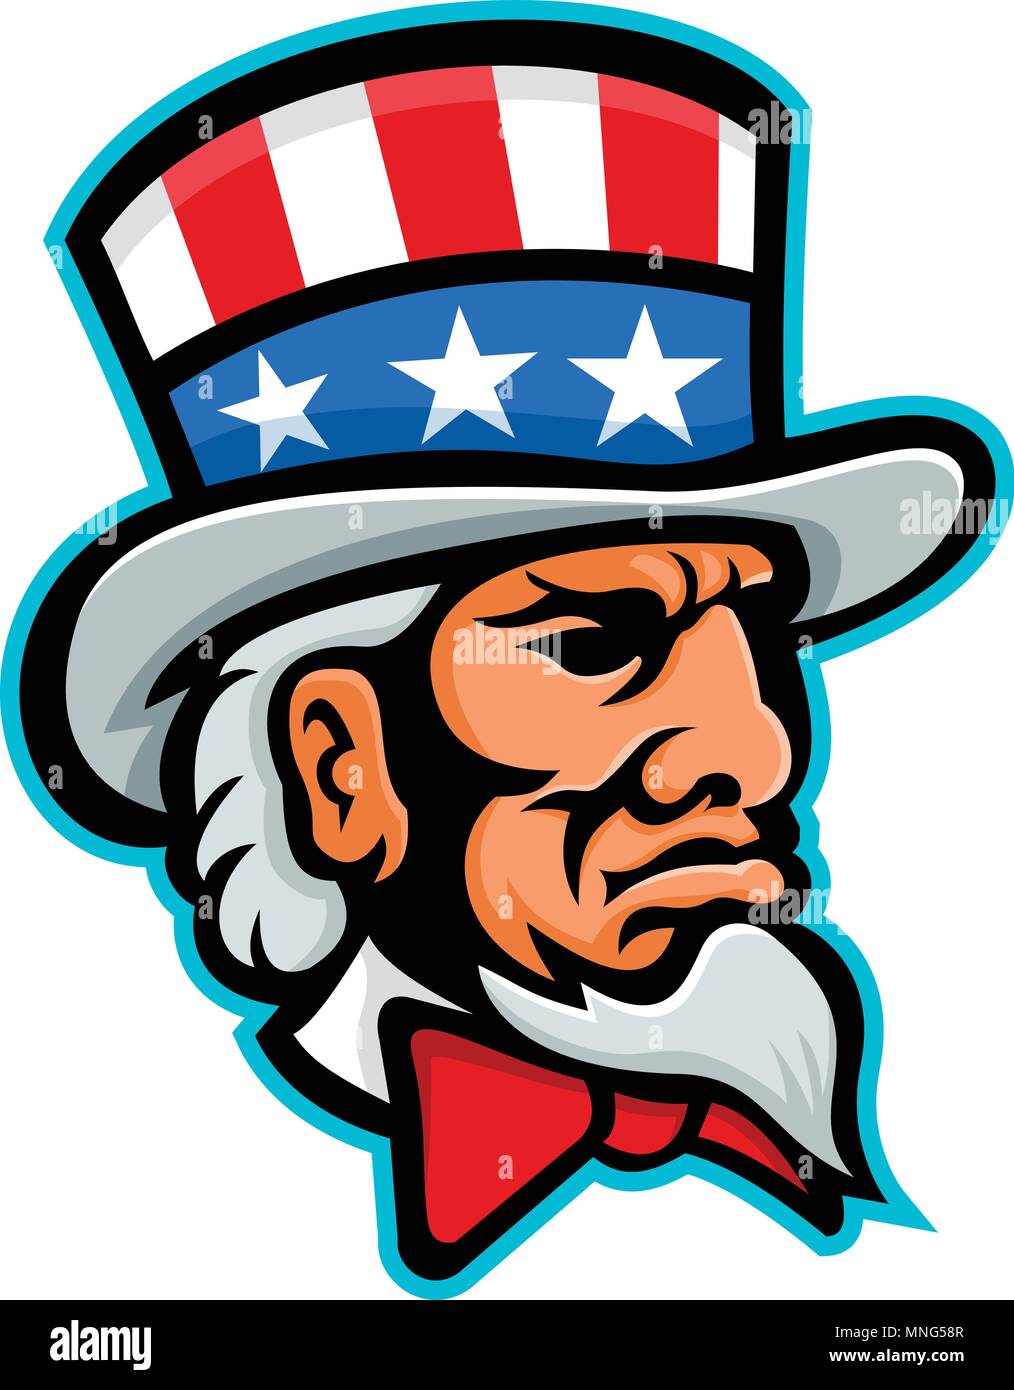 Icona di mascotte illustrazione della testa dello zio Sam, un famoso simbolo del governo americano nella cultura americana e il patriottismo, indossando un cappello a cilindro con USA fl Illustrazione Vettoriale